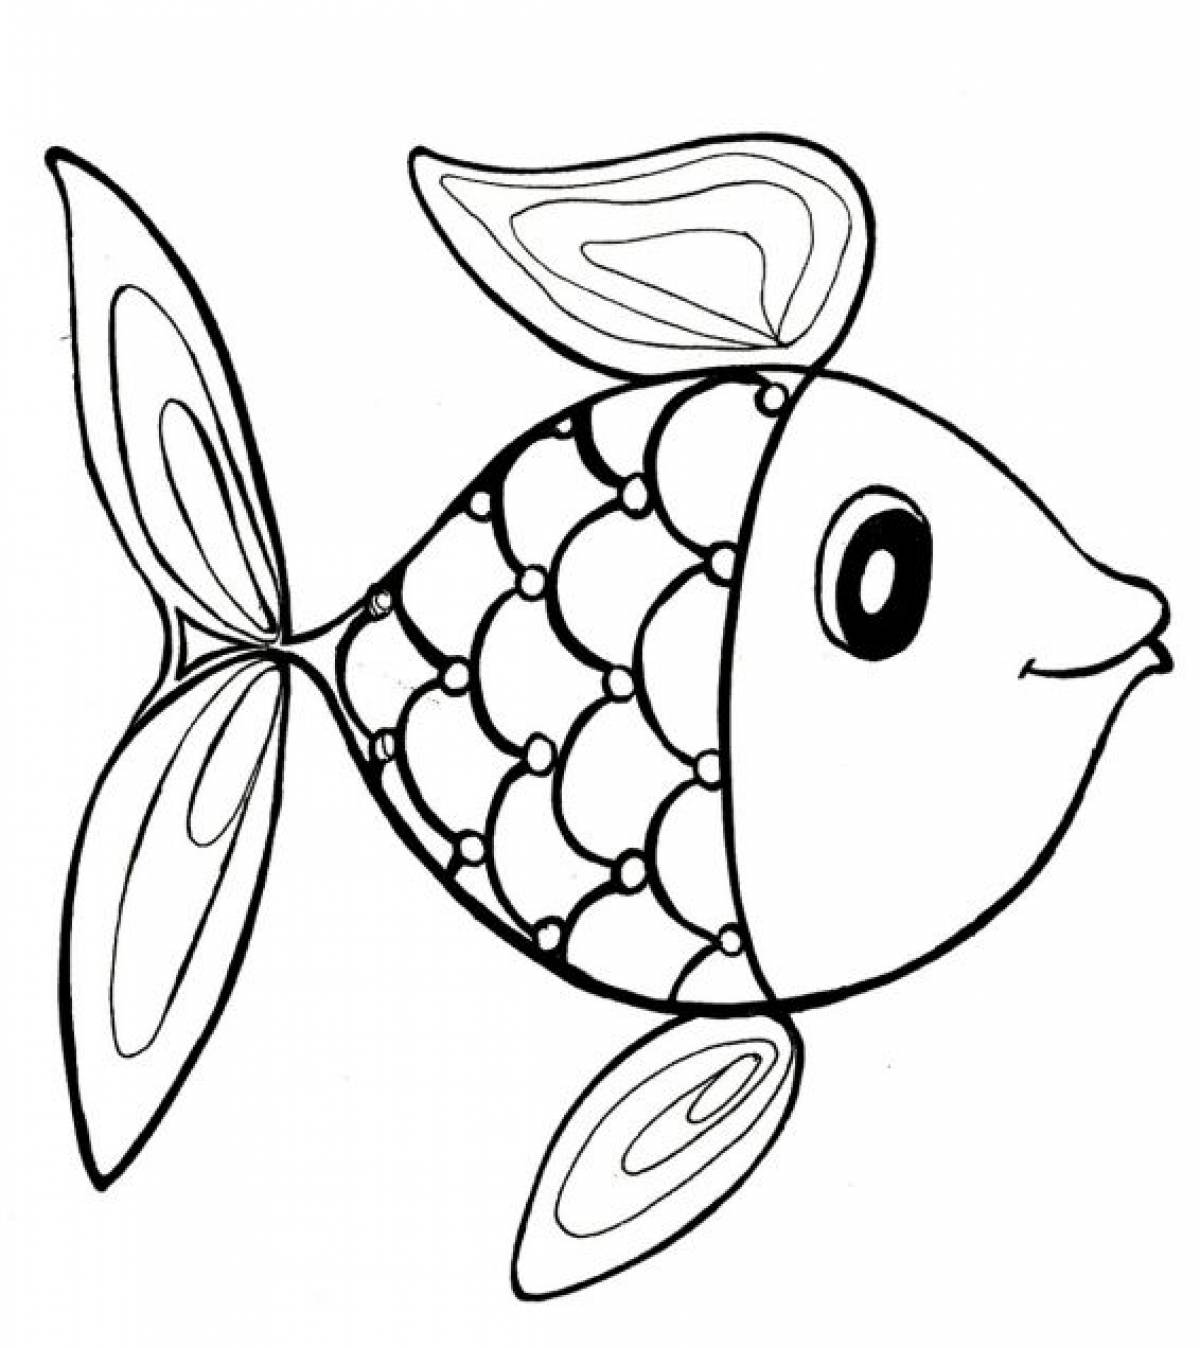 Раскраска рыбки для детей 5 6 лет. Раскраска рыбка. Рыба раскраска для детей. Рыбка раскраска для детей. Рыбка для раскрашивания для детей.